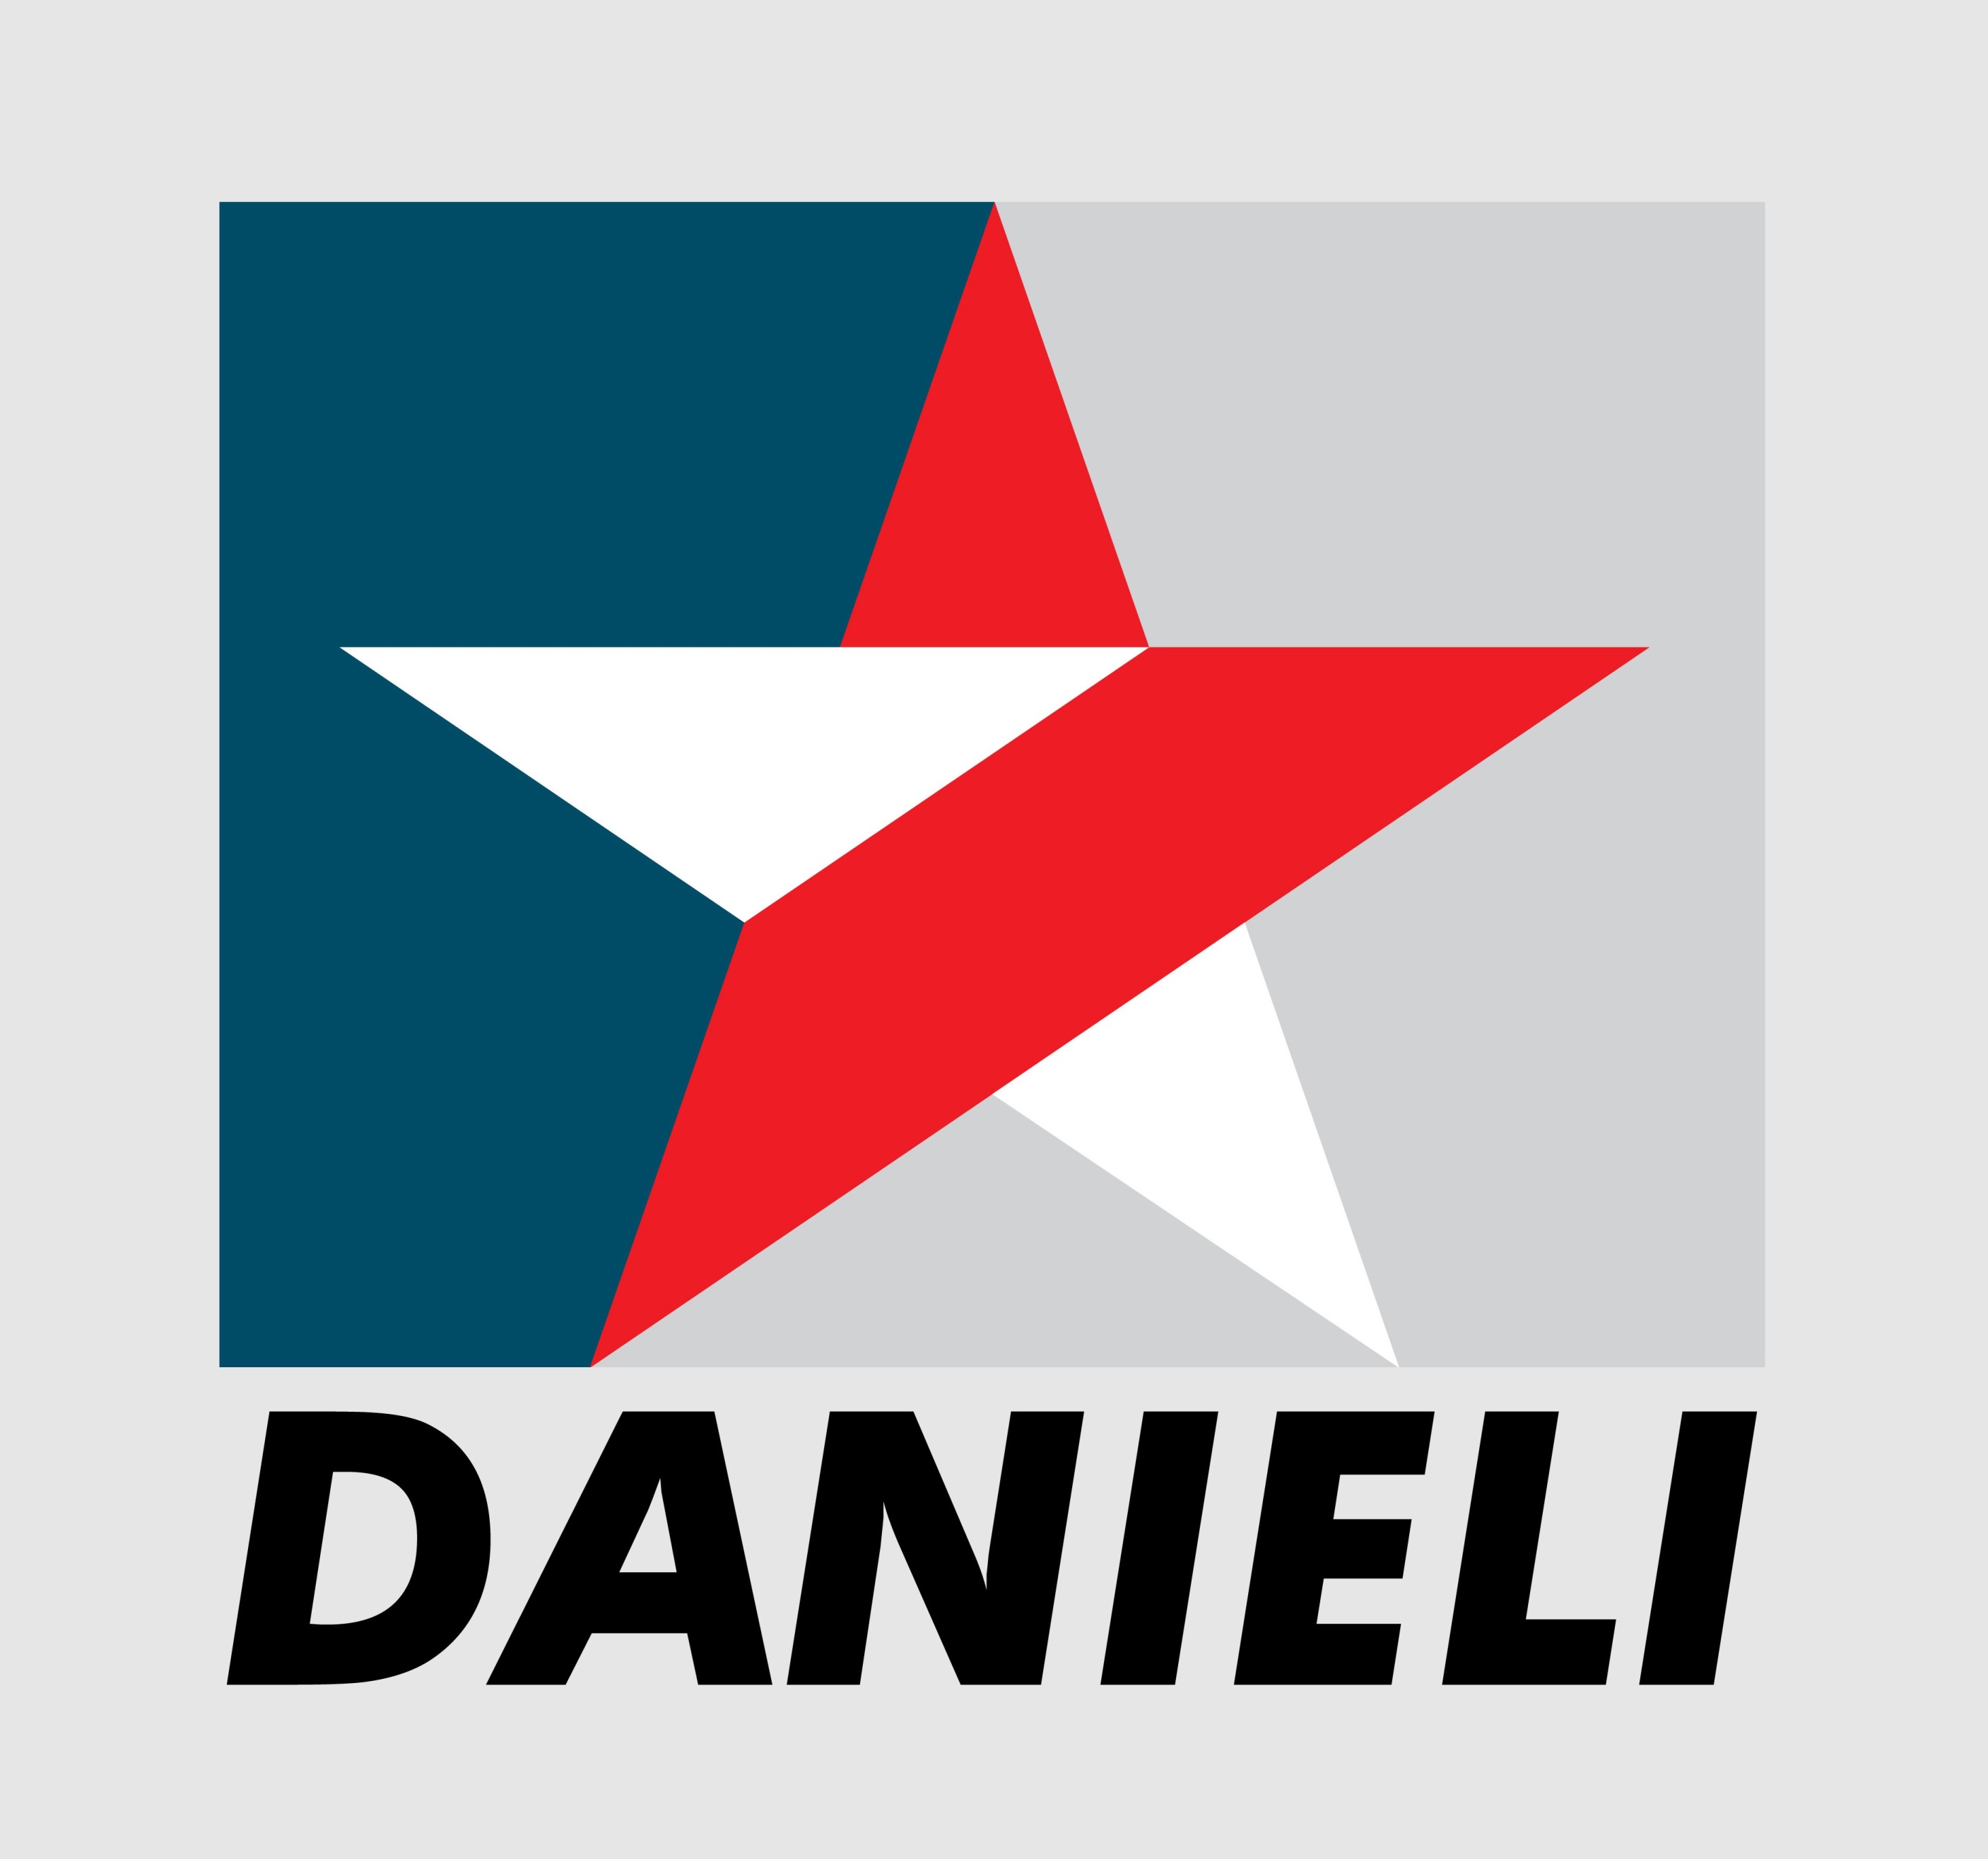 DANIELI & C. OFFICINE MECCANICHE S.p.A